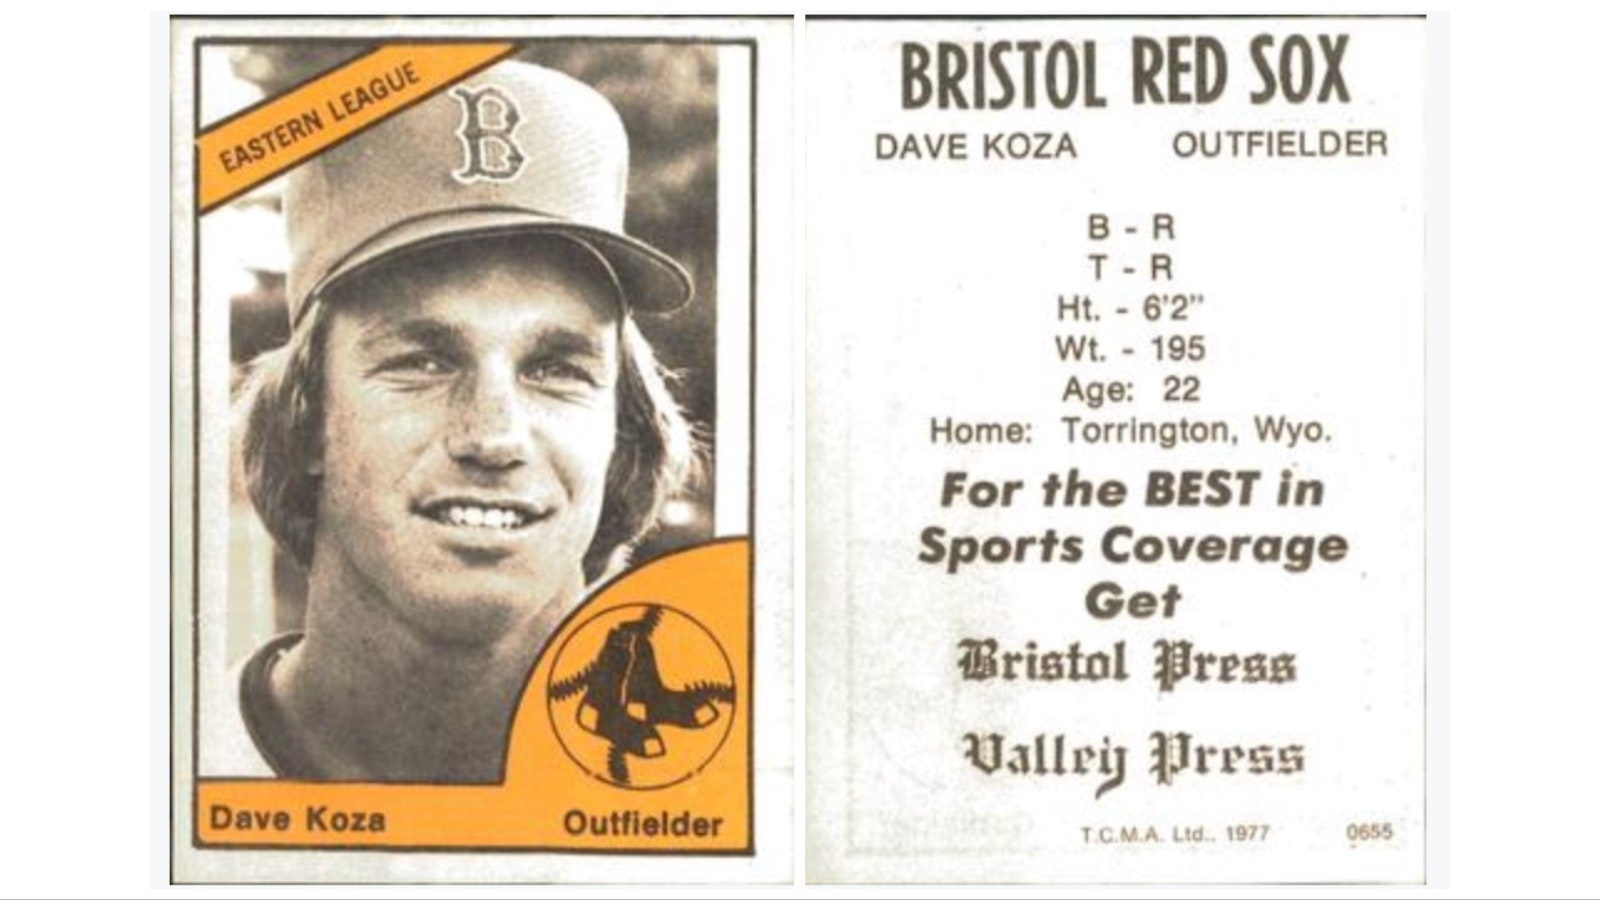 Dave Koza's 1977 baseball card.